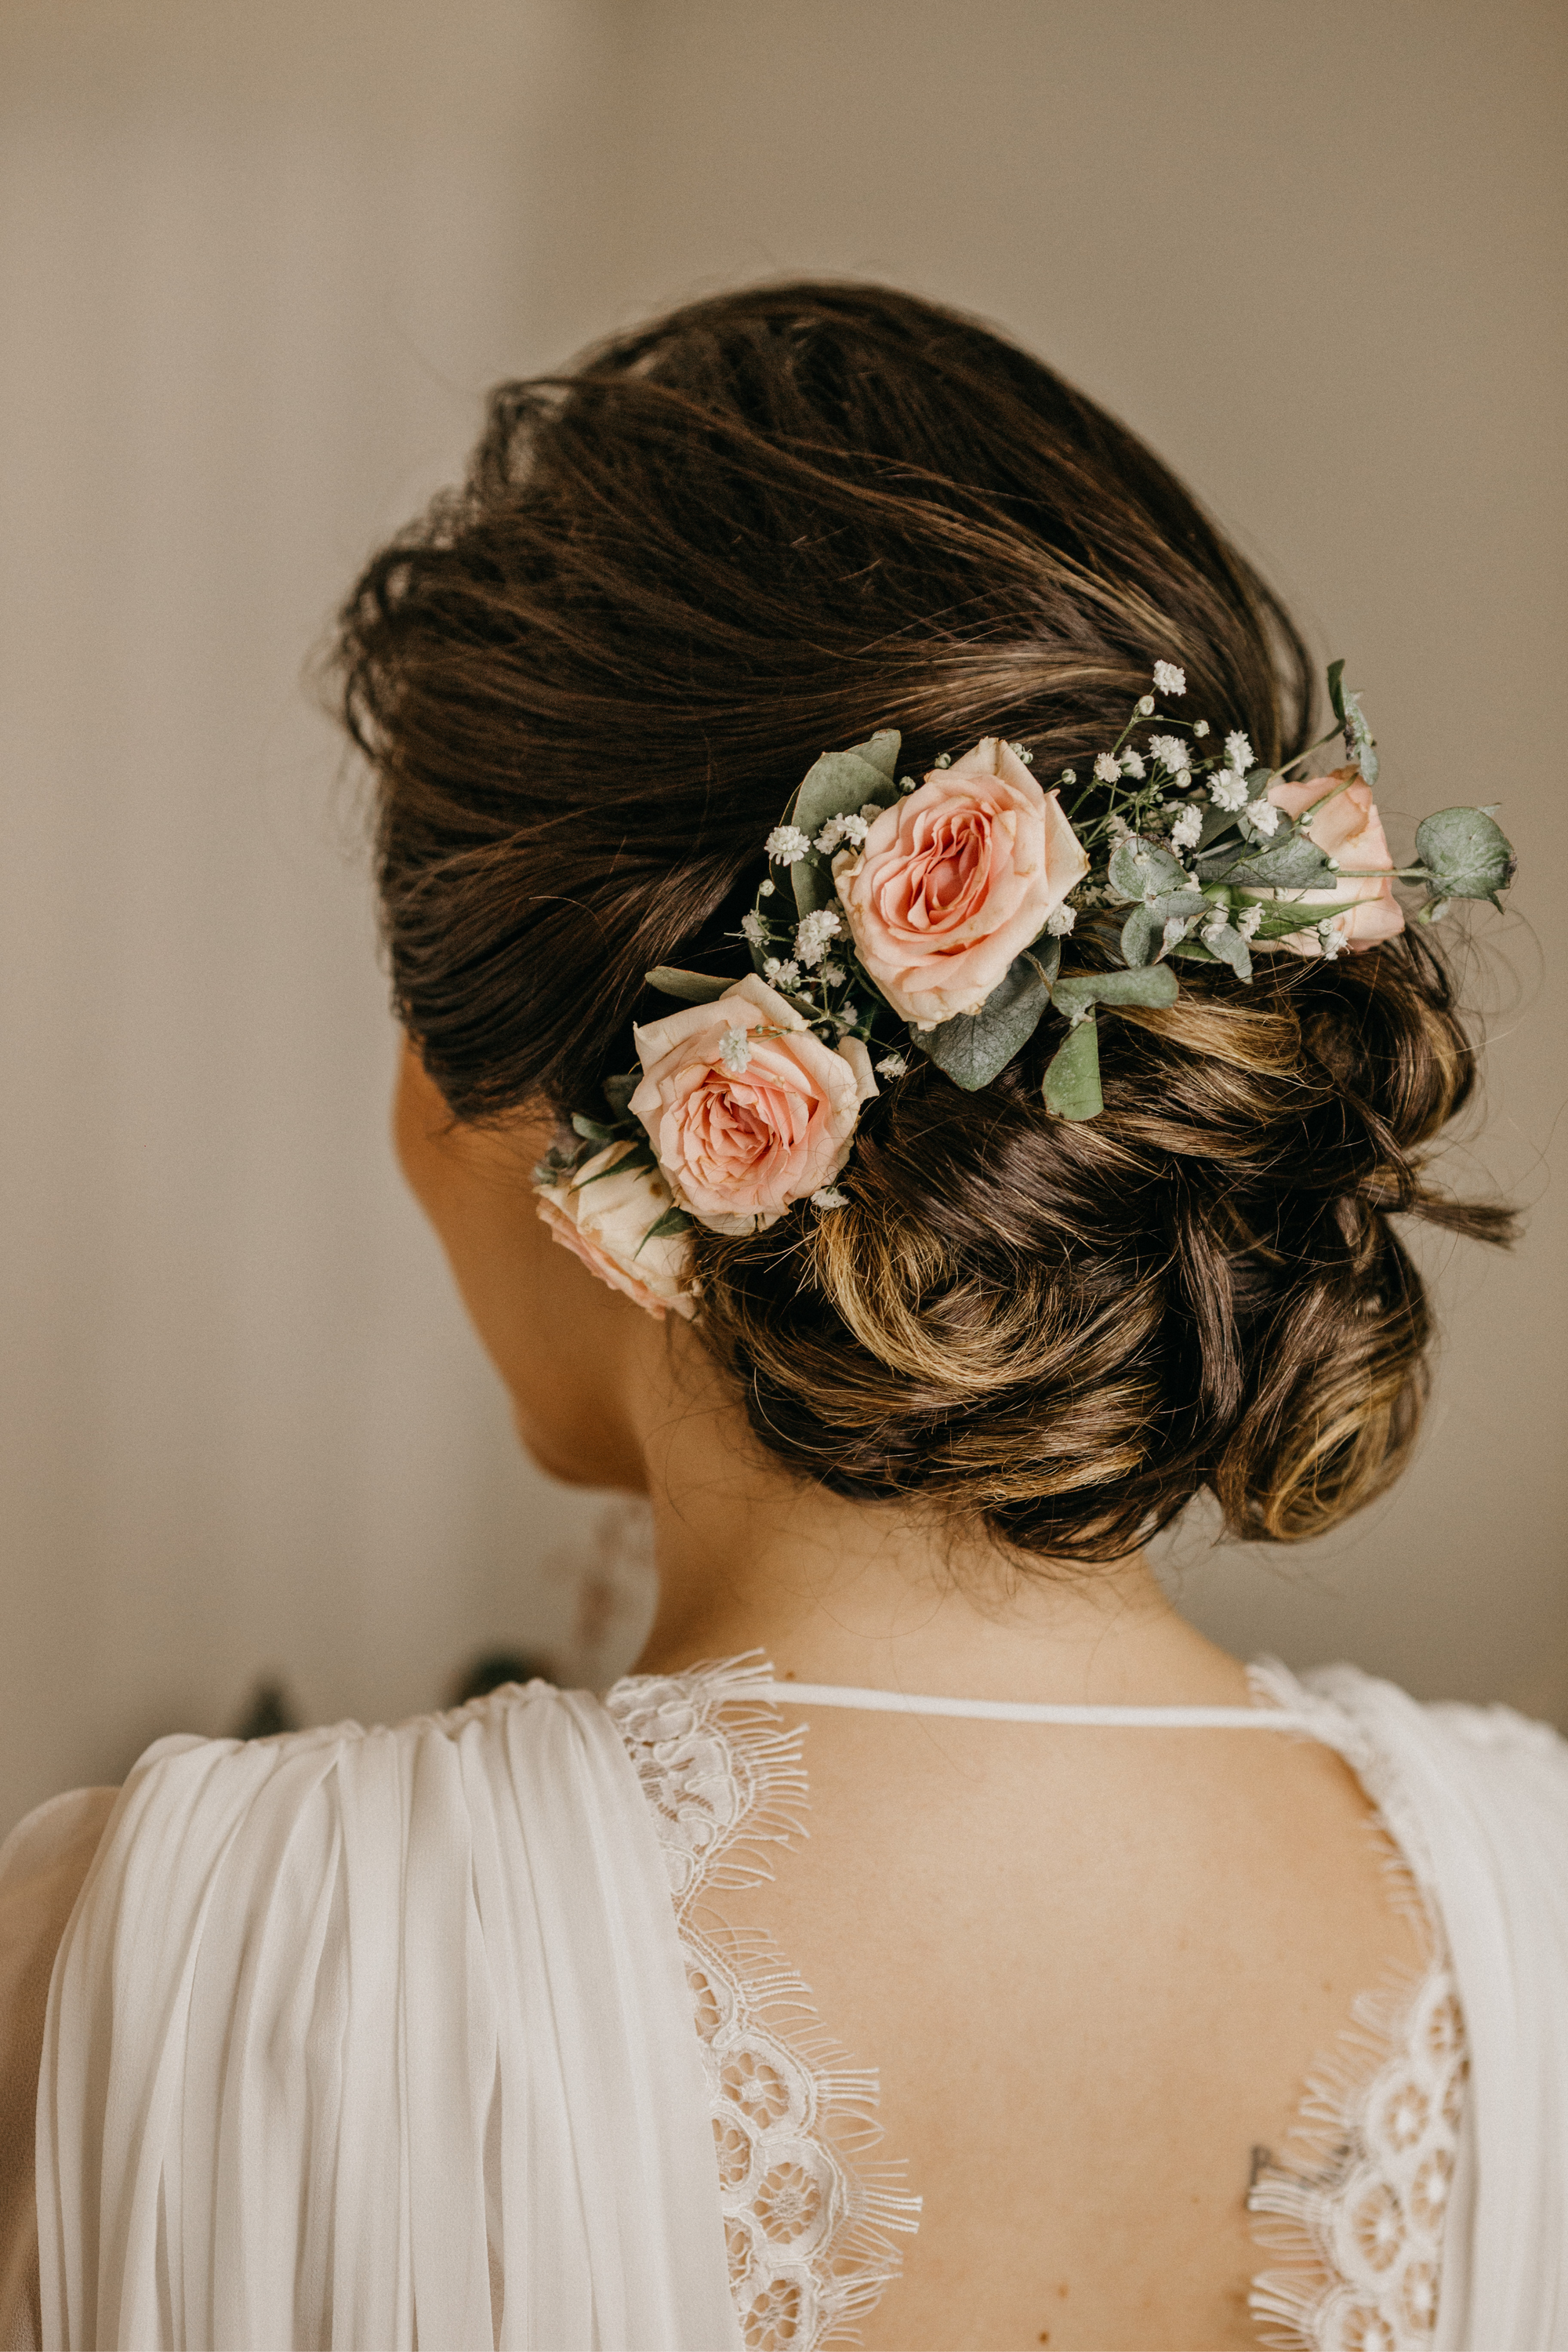 Die Braut trägt eine Brautfrisur mit Blumen.